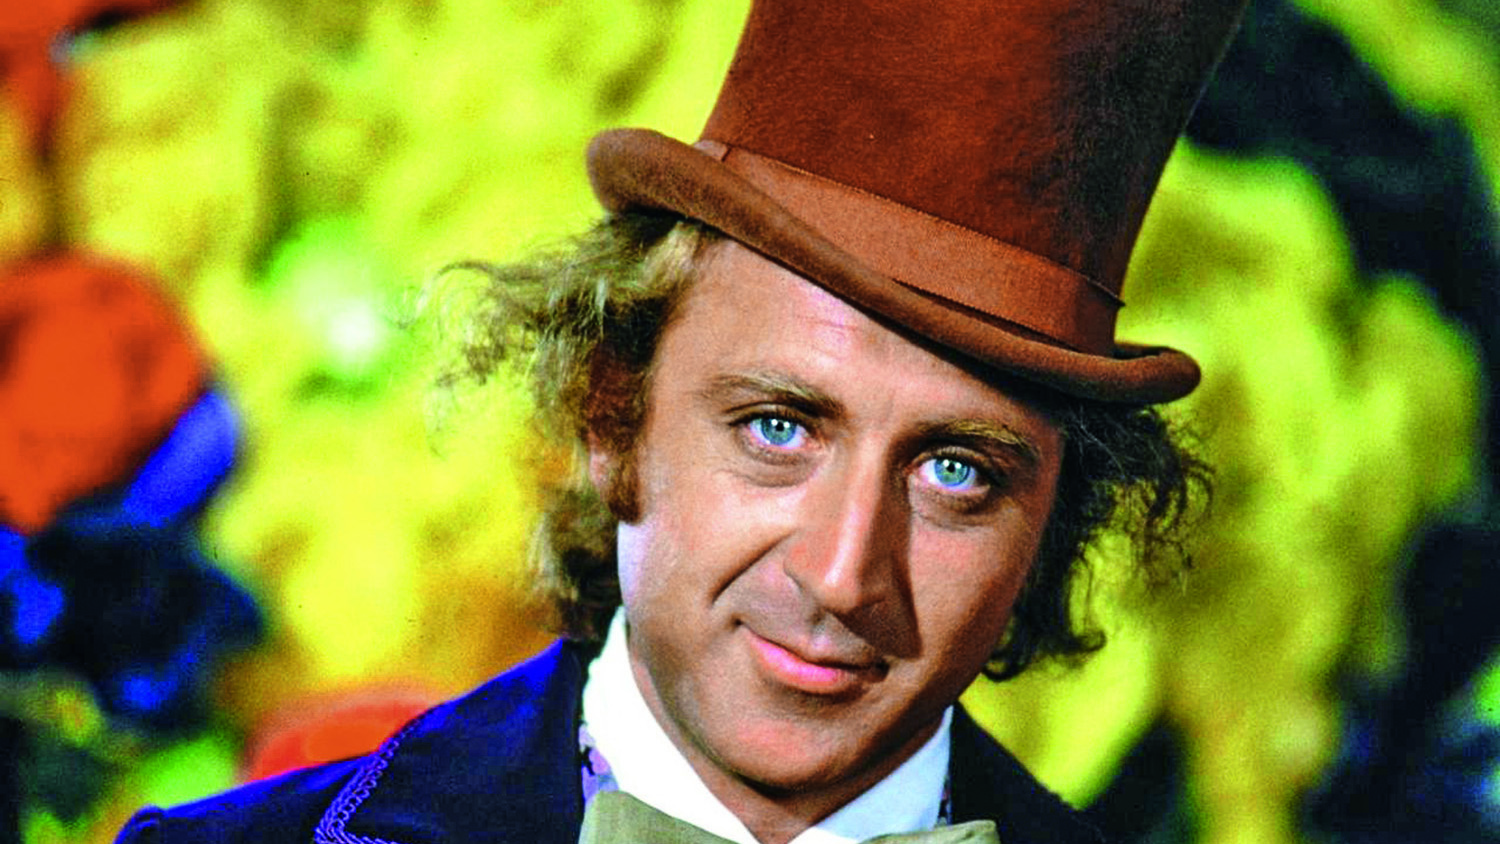 Personagem de Willy Wonka terá filme prólogo em 2023